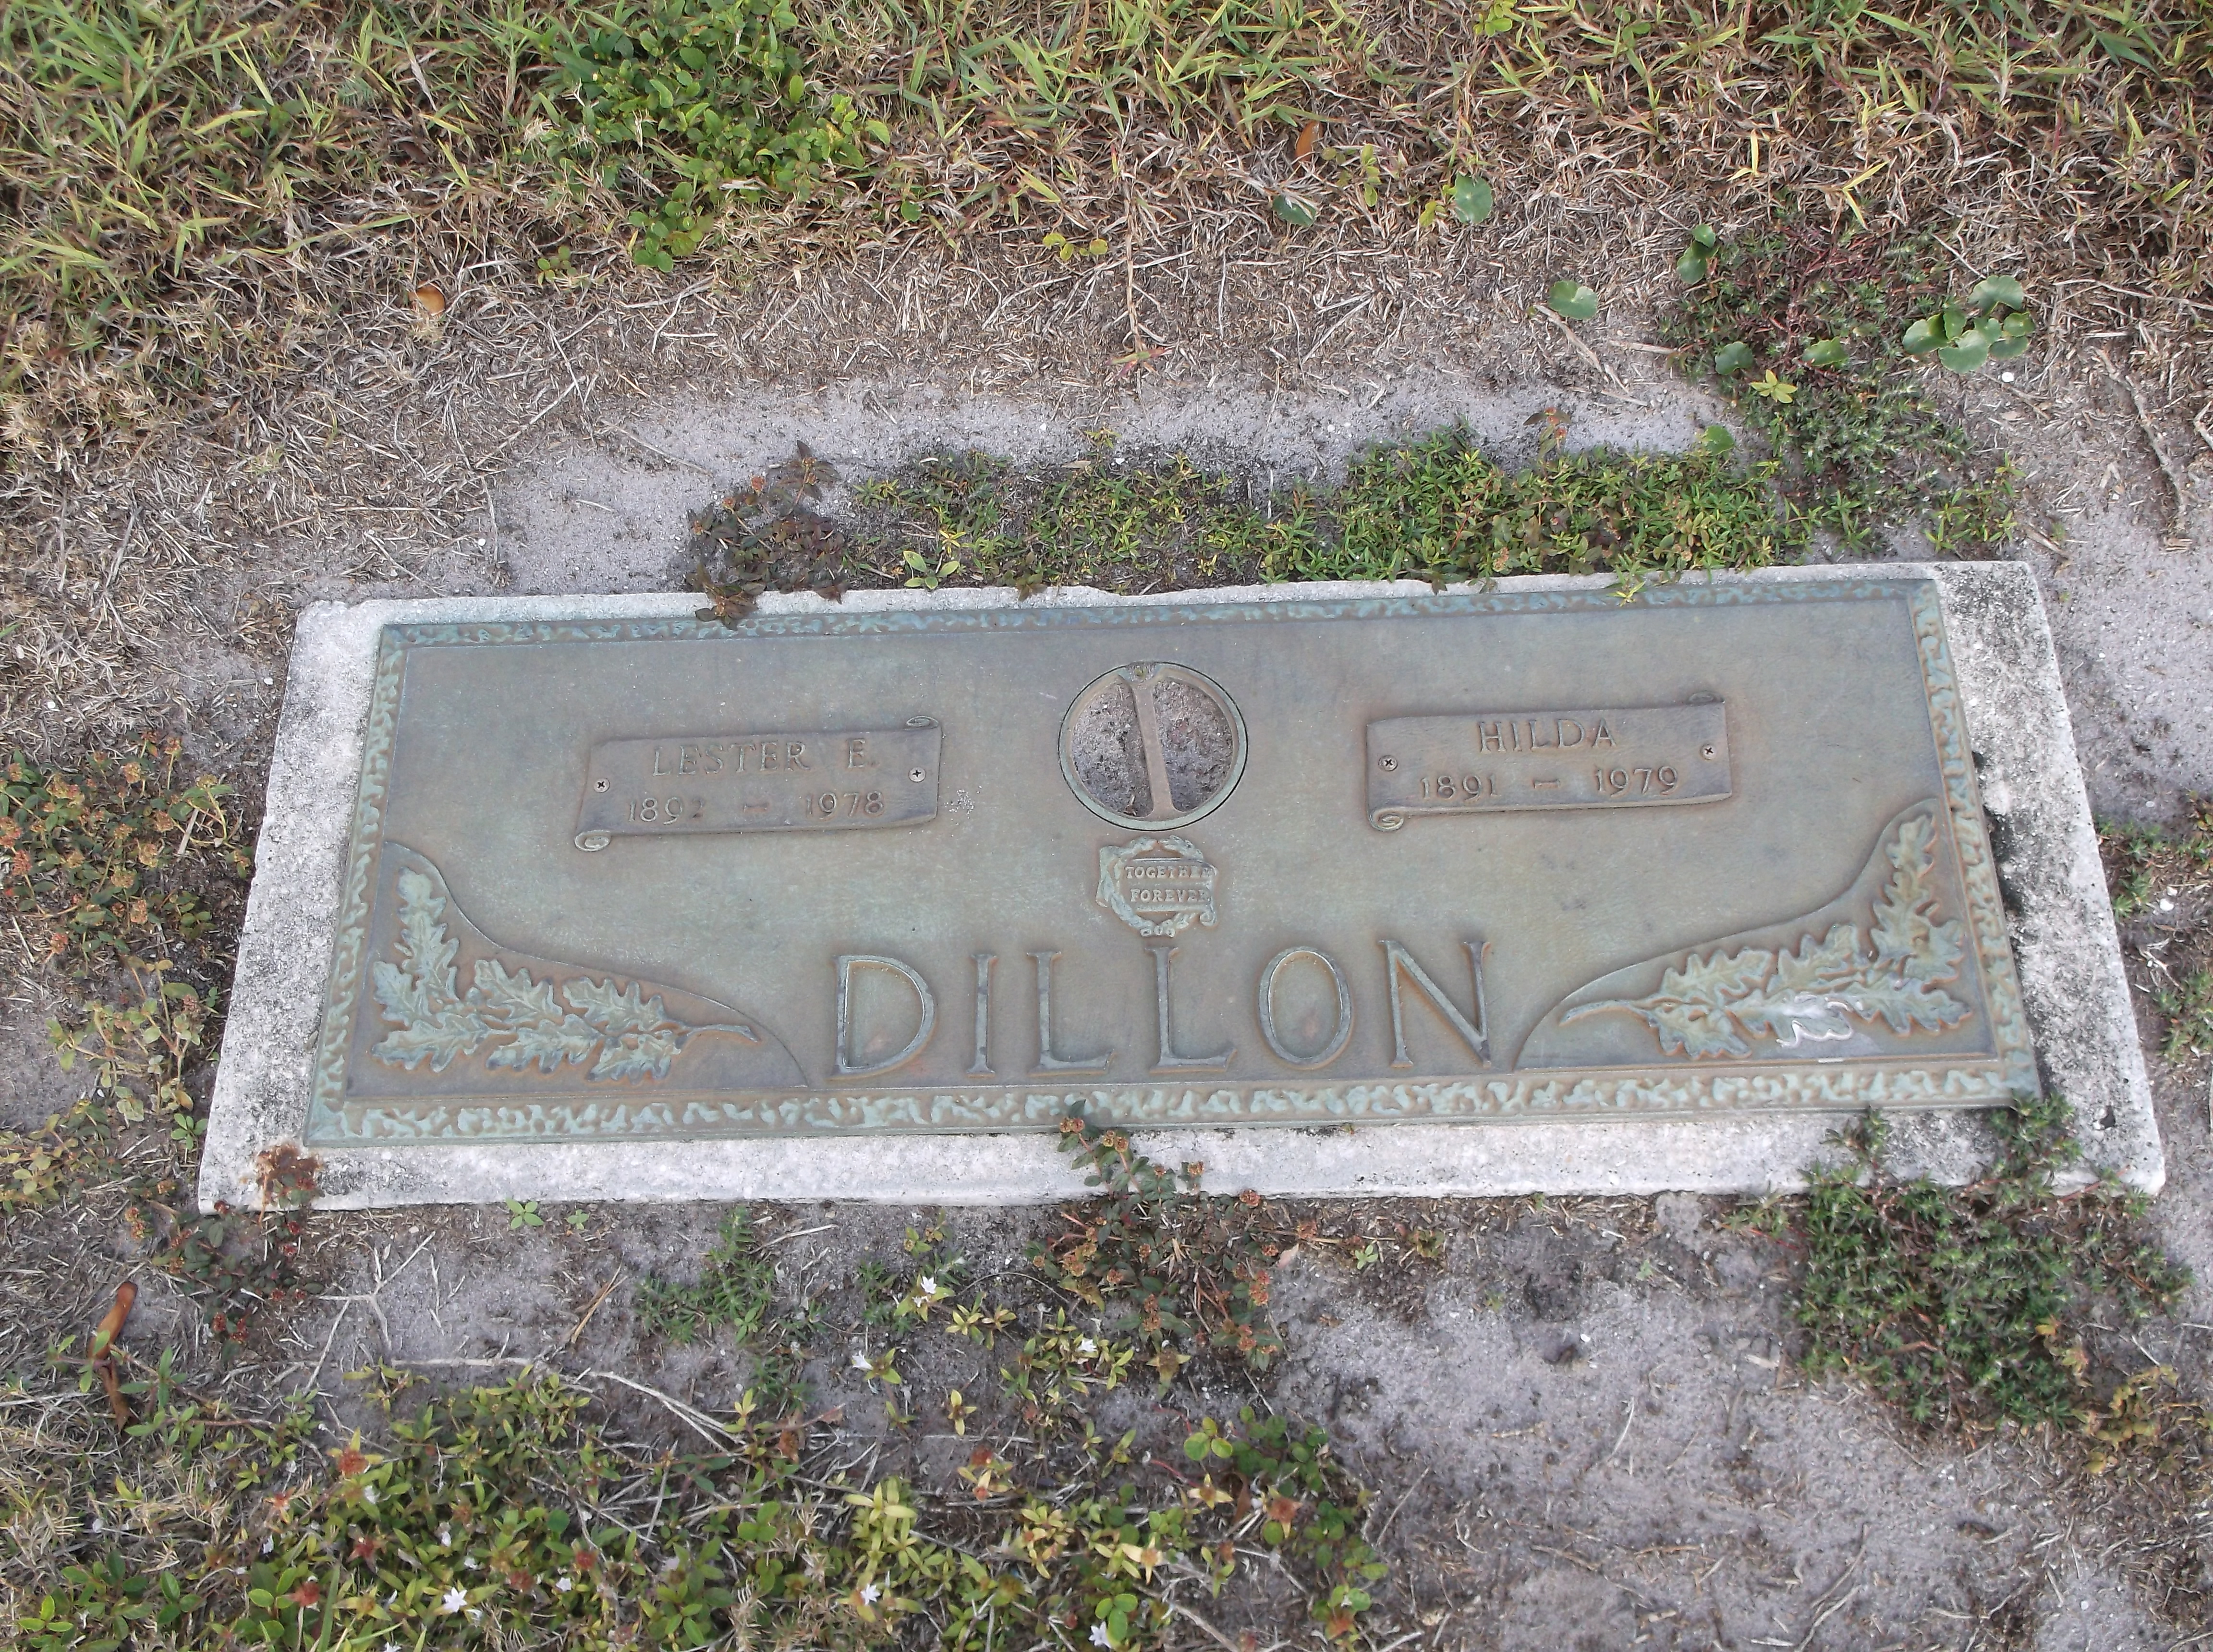 Lester E Dillon